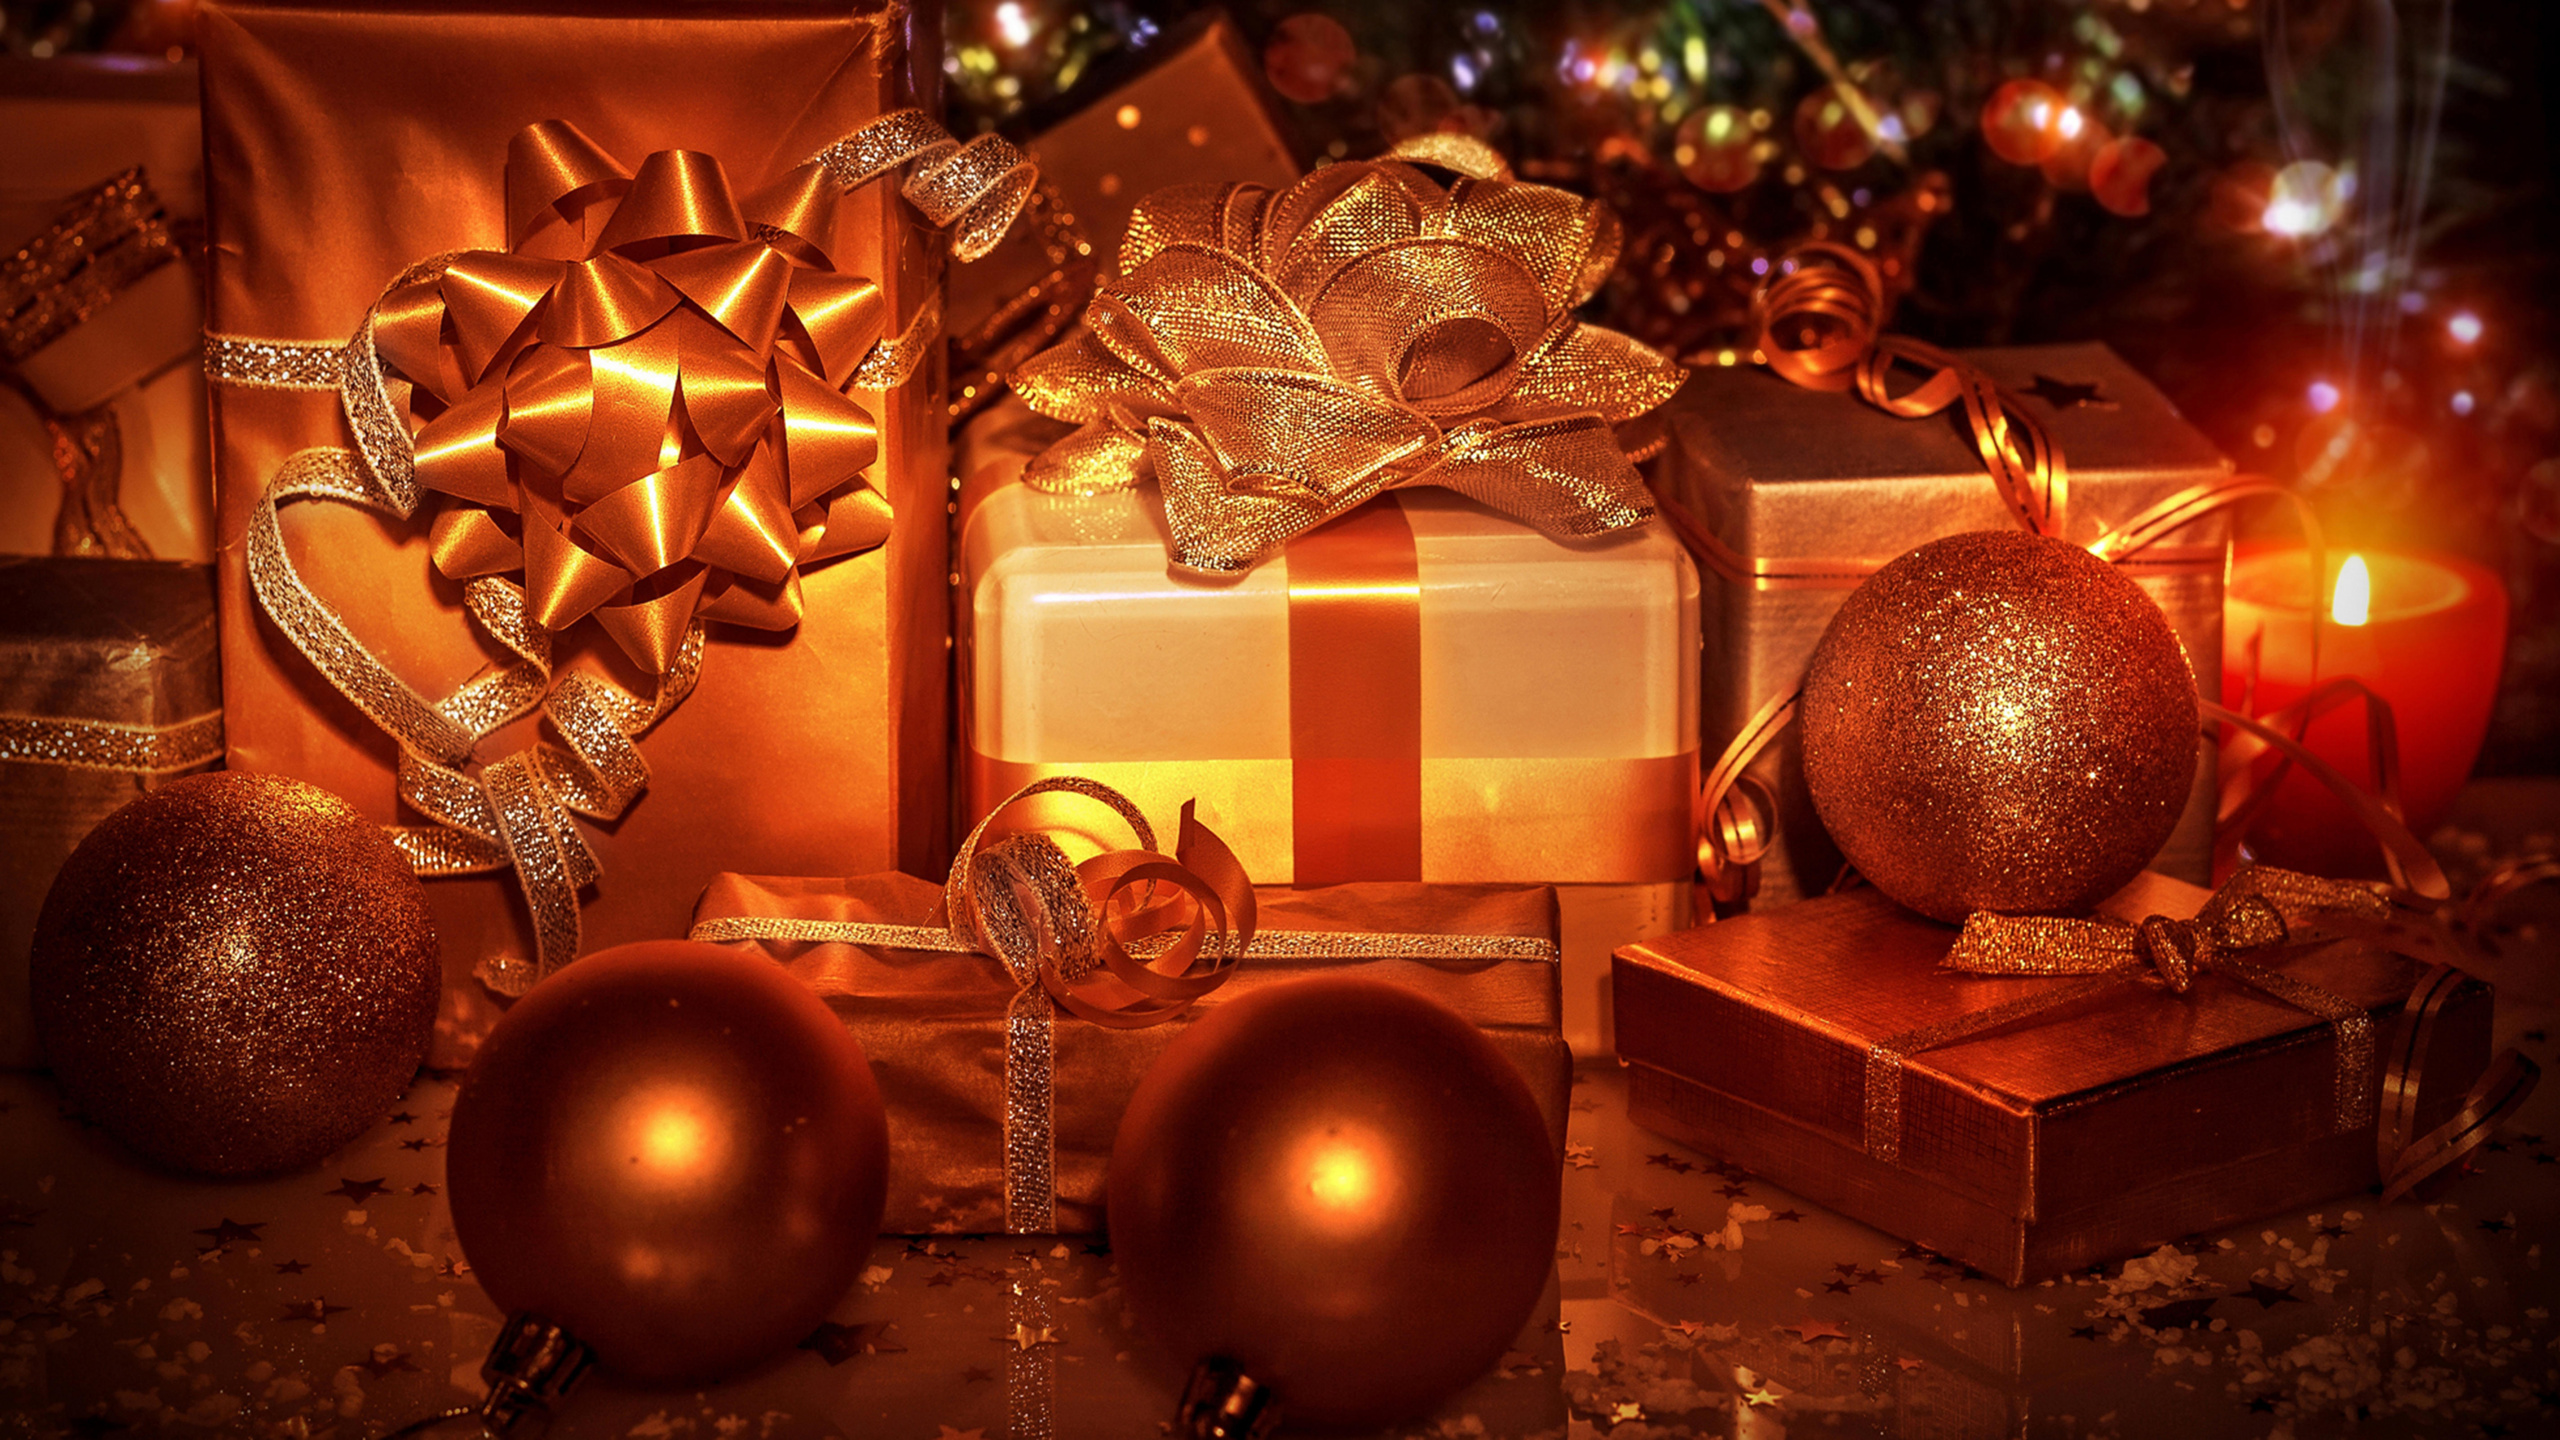 圣诞节那天, 圣诞节的装饰品, 圣诞树, 圣诞节礼物, 假日 壁纸 2560x1440 允许